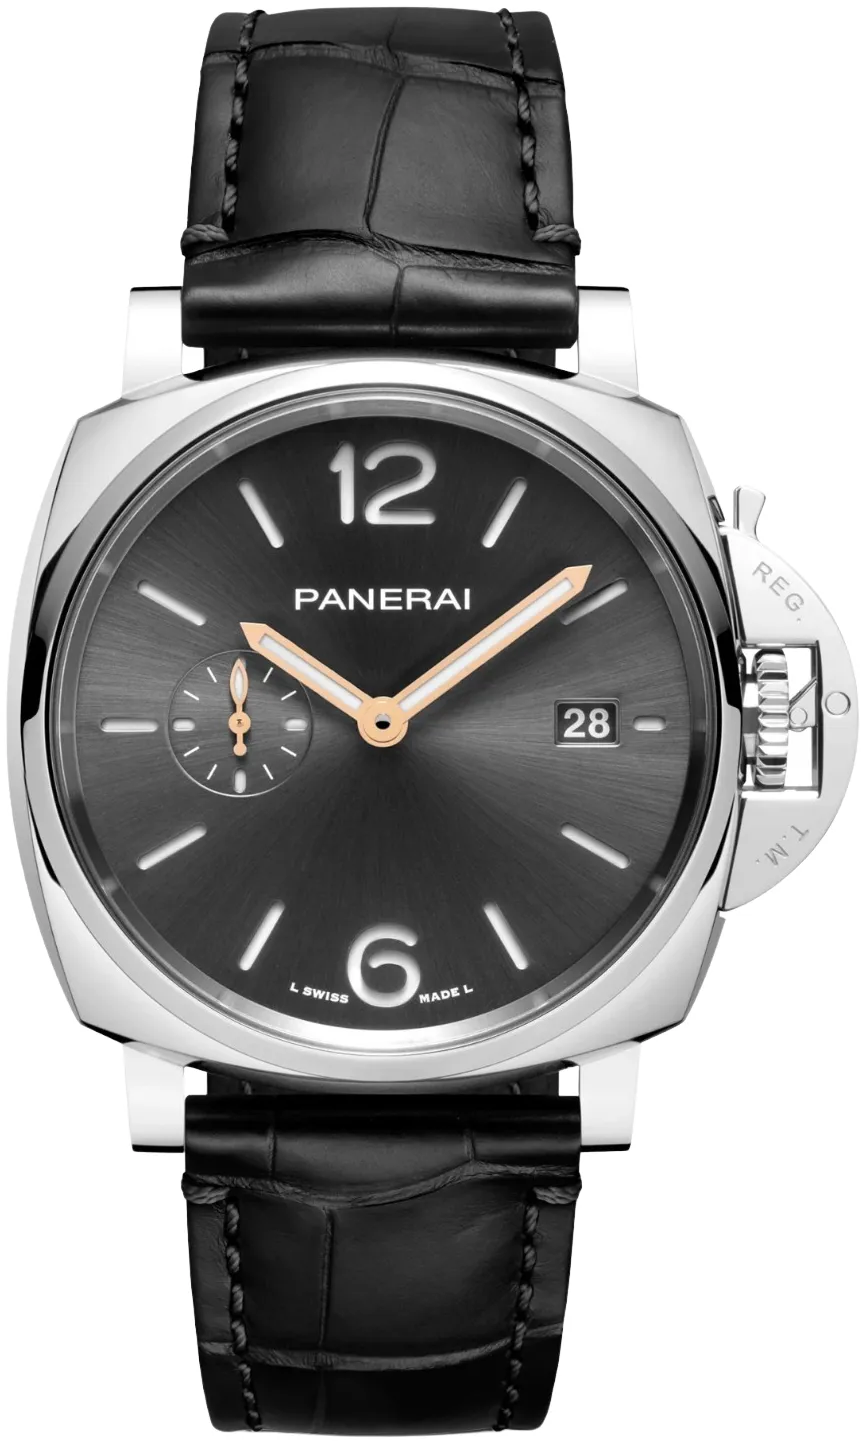 Panerai Luminor Due PAM 01250 42mm Stainless steel Gray